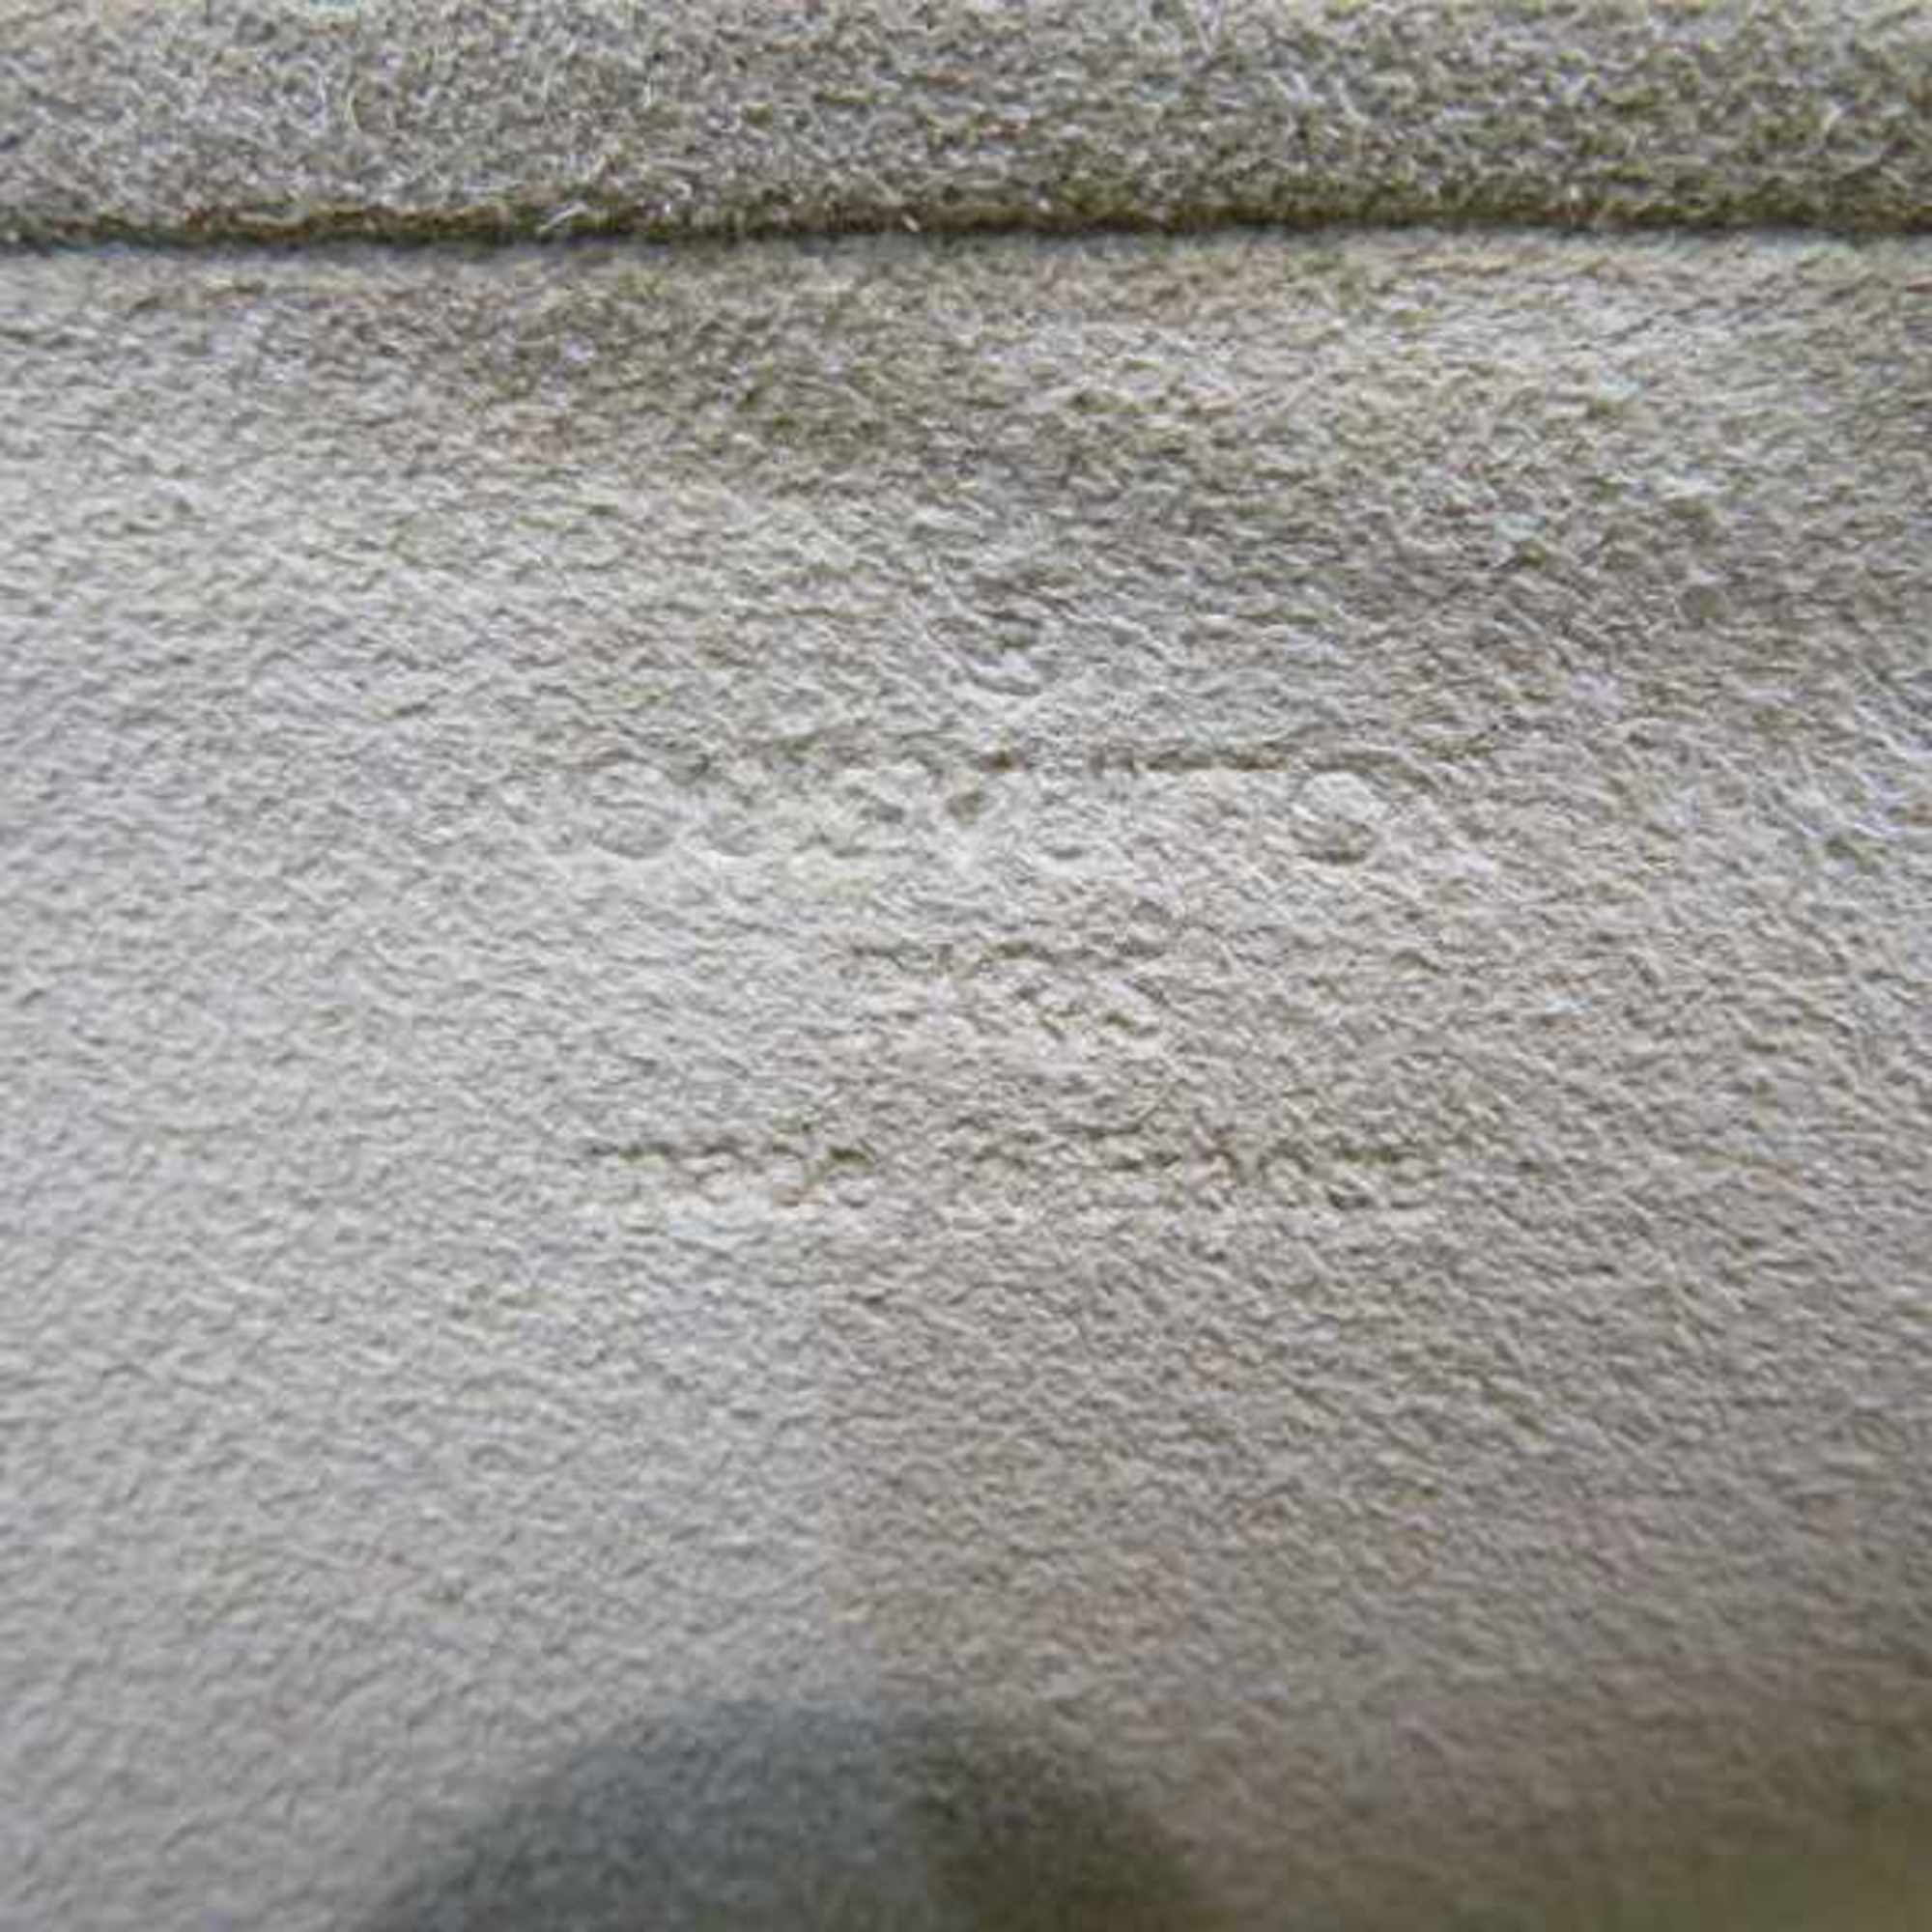 Louis Vuitton Monogram Pochette Twin GM M51852 Bag Shoulder Women's